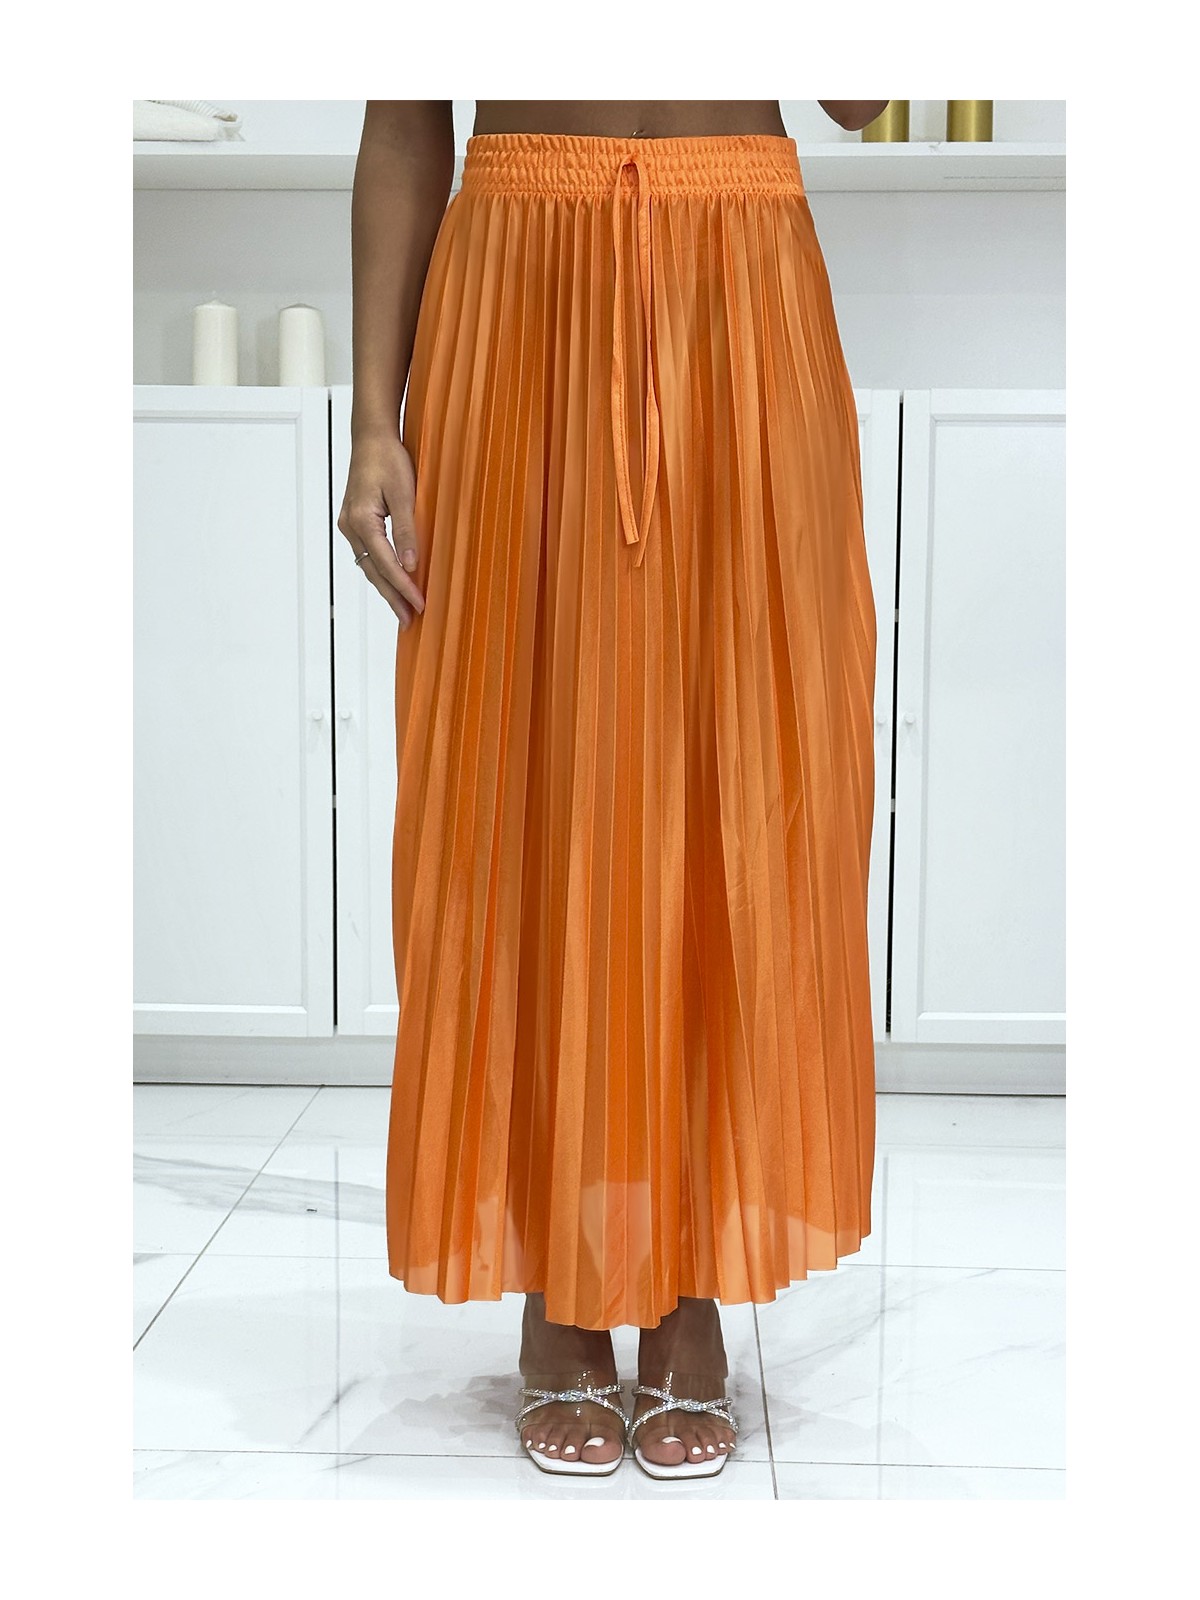 Longue jupe plissé satiné orange très chic - 3